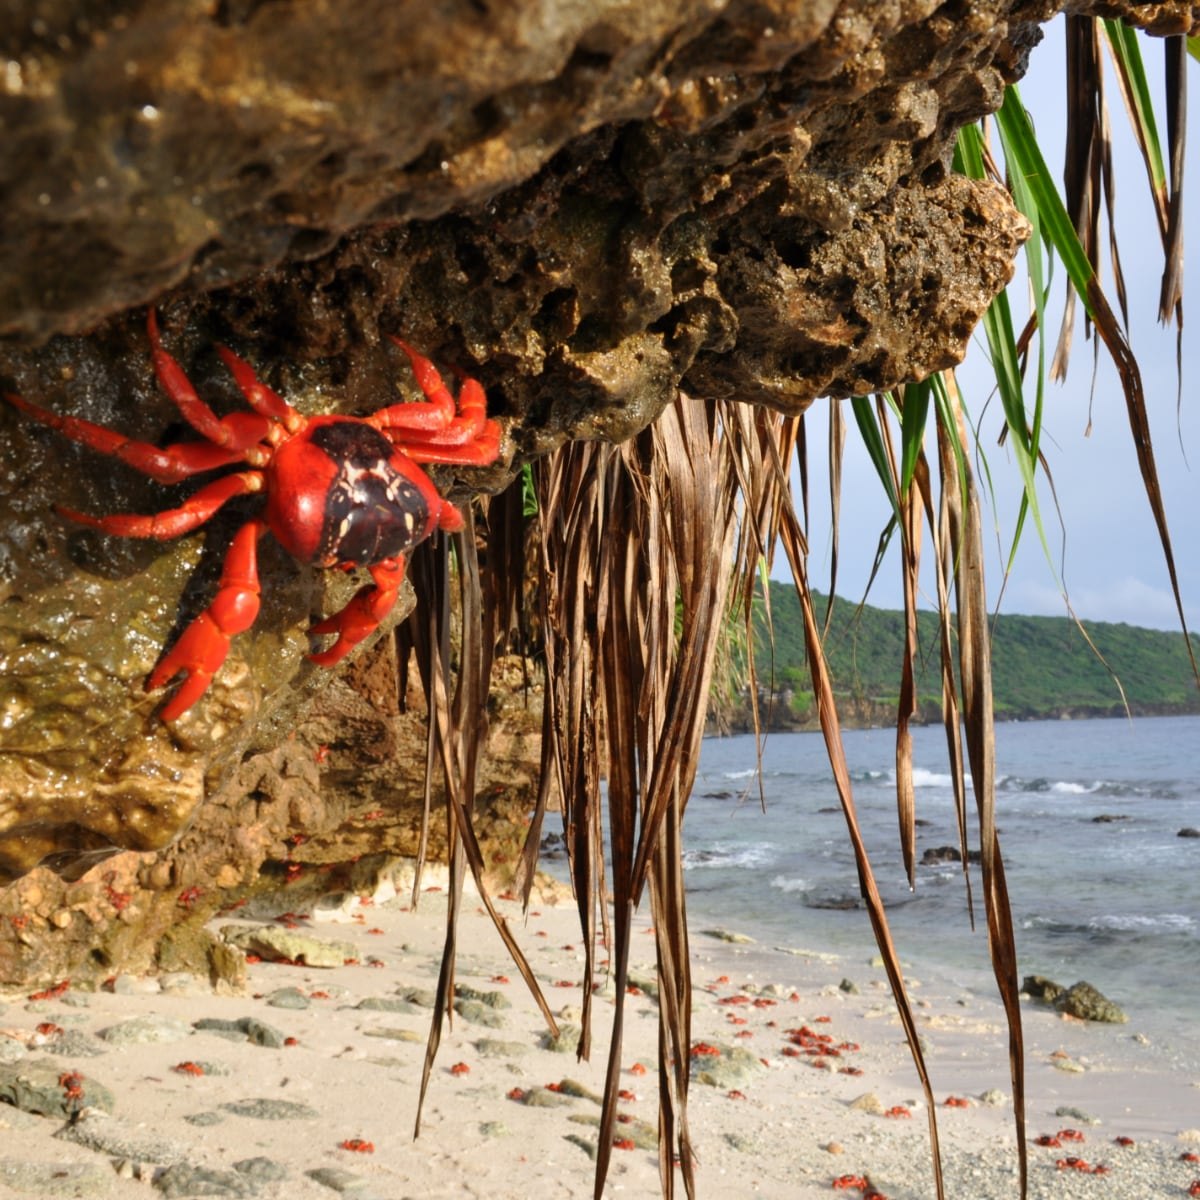 Spider island. Красный мангровый краб миграция. Красный краб индийский океан. Остров пауков Айтолико. Айтолико Греция остров паук.